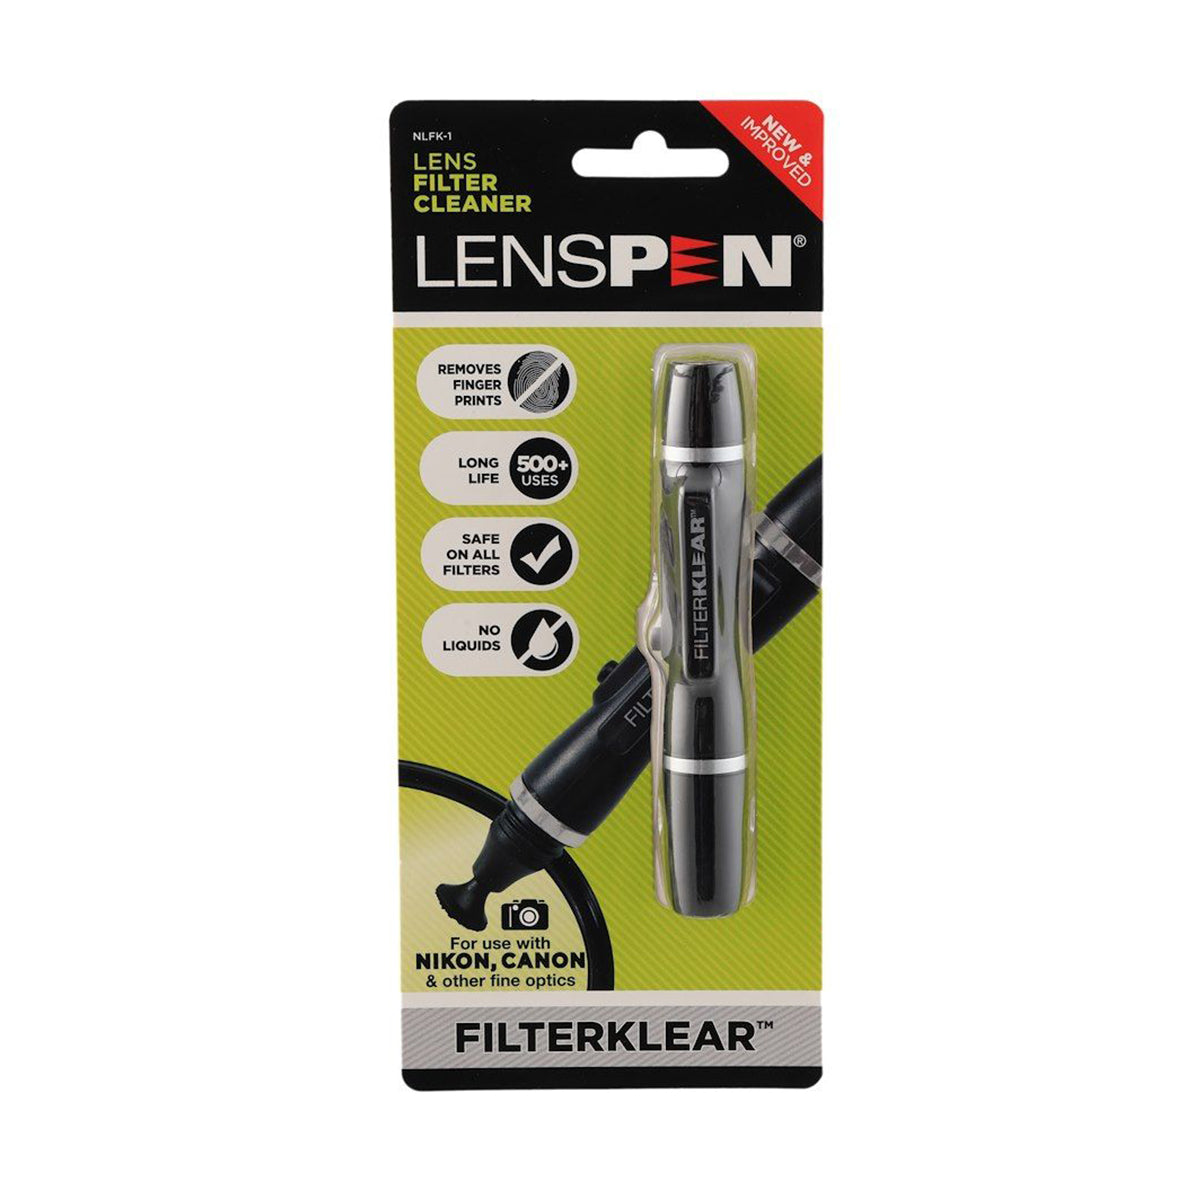 LensPen FilterKlear